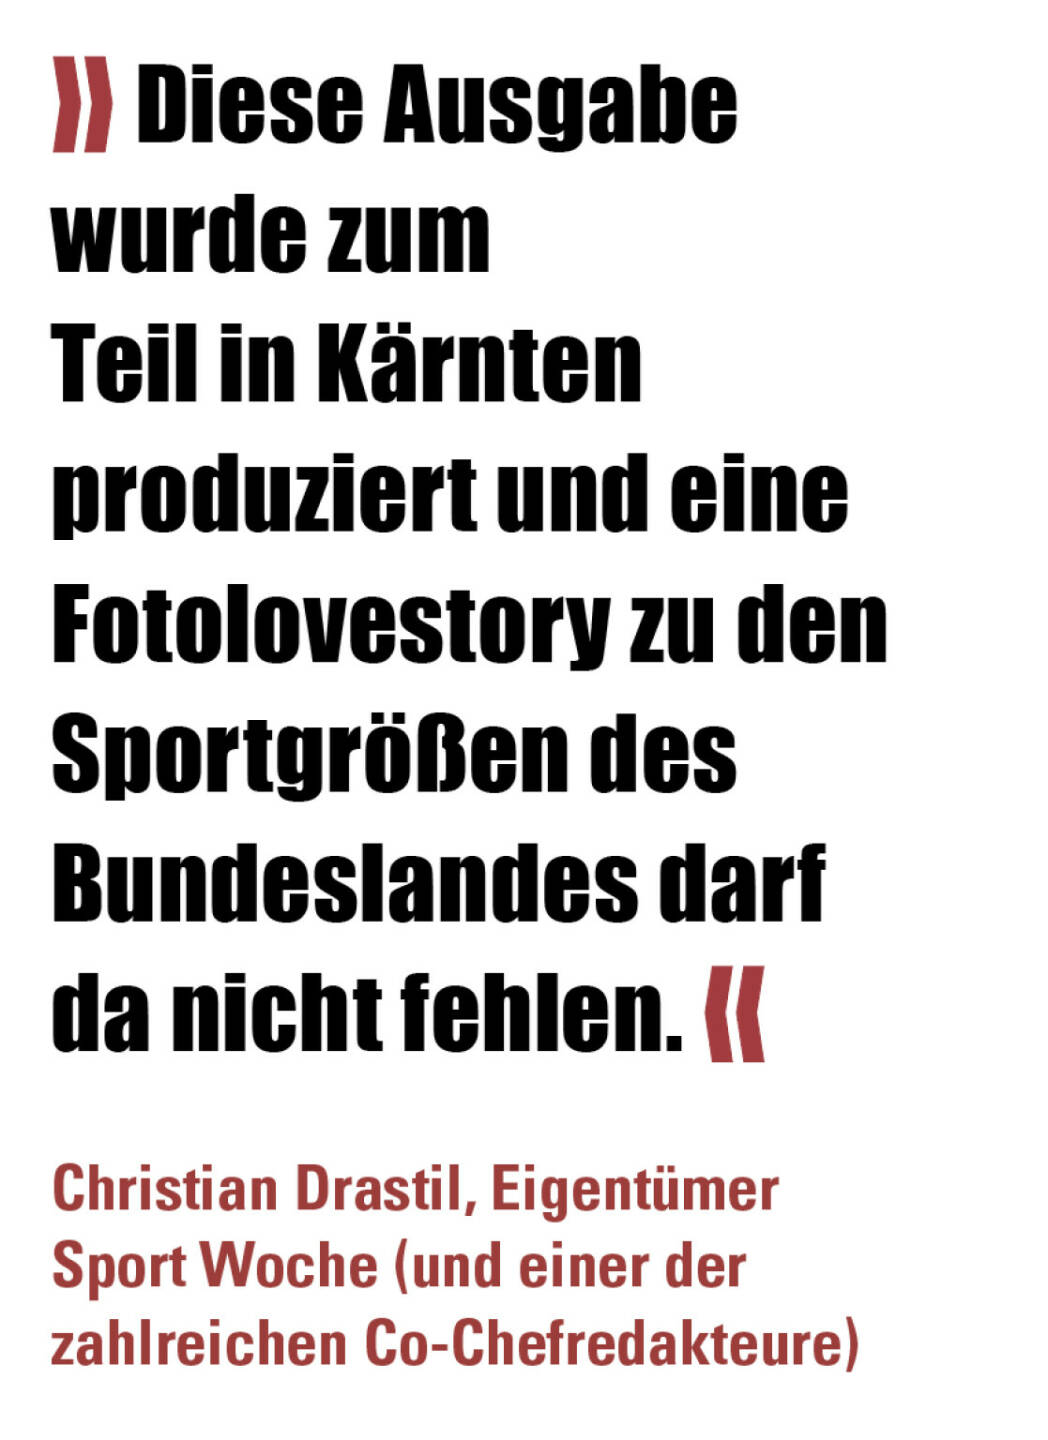 » Diese Ausgabe wurde zum Teil in Kärnten produziert und eine Fotolovestory zu den Sportgrößen des Bundeslandes darf da nicht fehlen. «
Christian Drastil, Eigentümer Sport Woche (und einer der zahlreichen Co-Chefredakteure) 